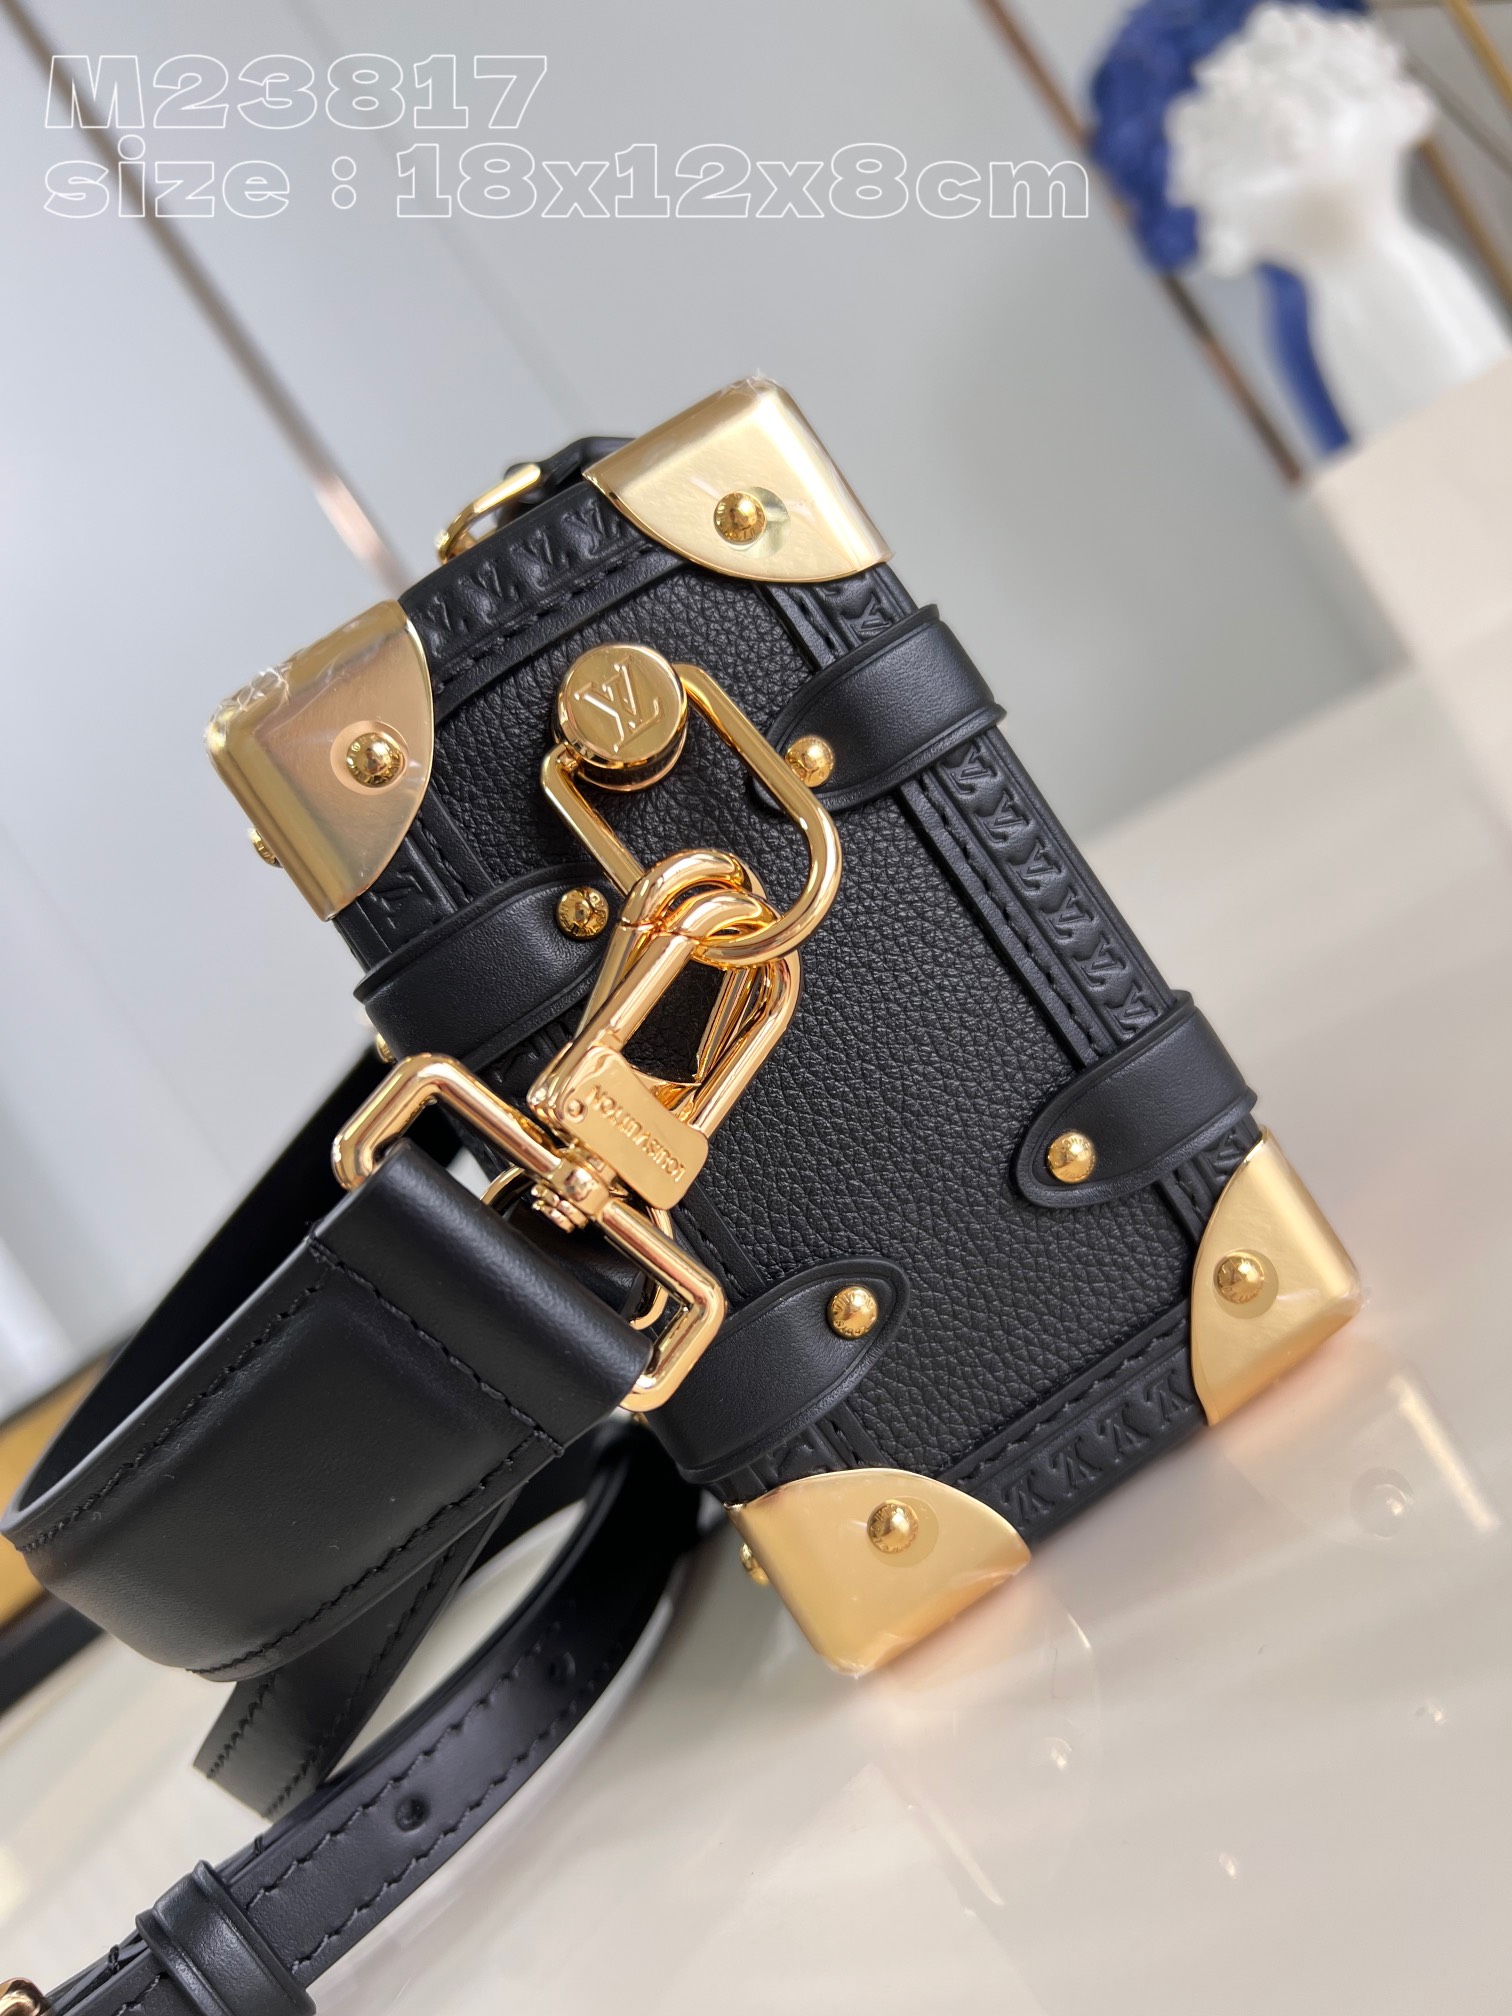 顶级原单M23817黑本款SideTrunk小号手袋取材粒面牛皮革搭配S-lock锁扣与包角诠释品牌传统